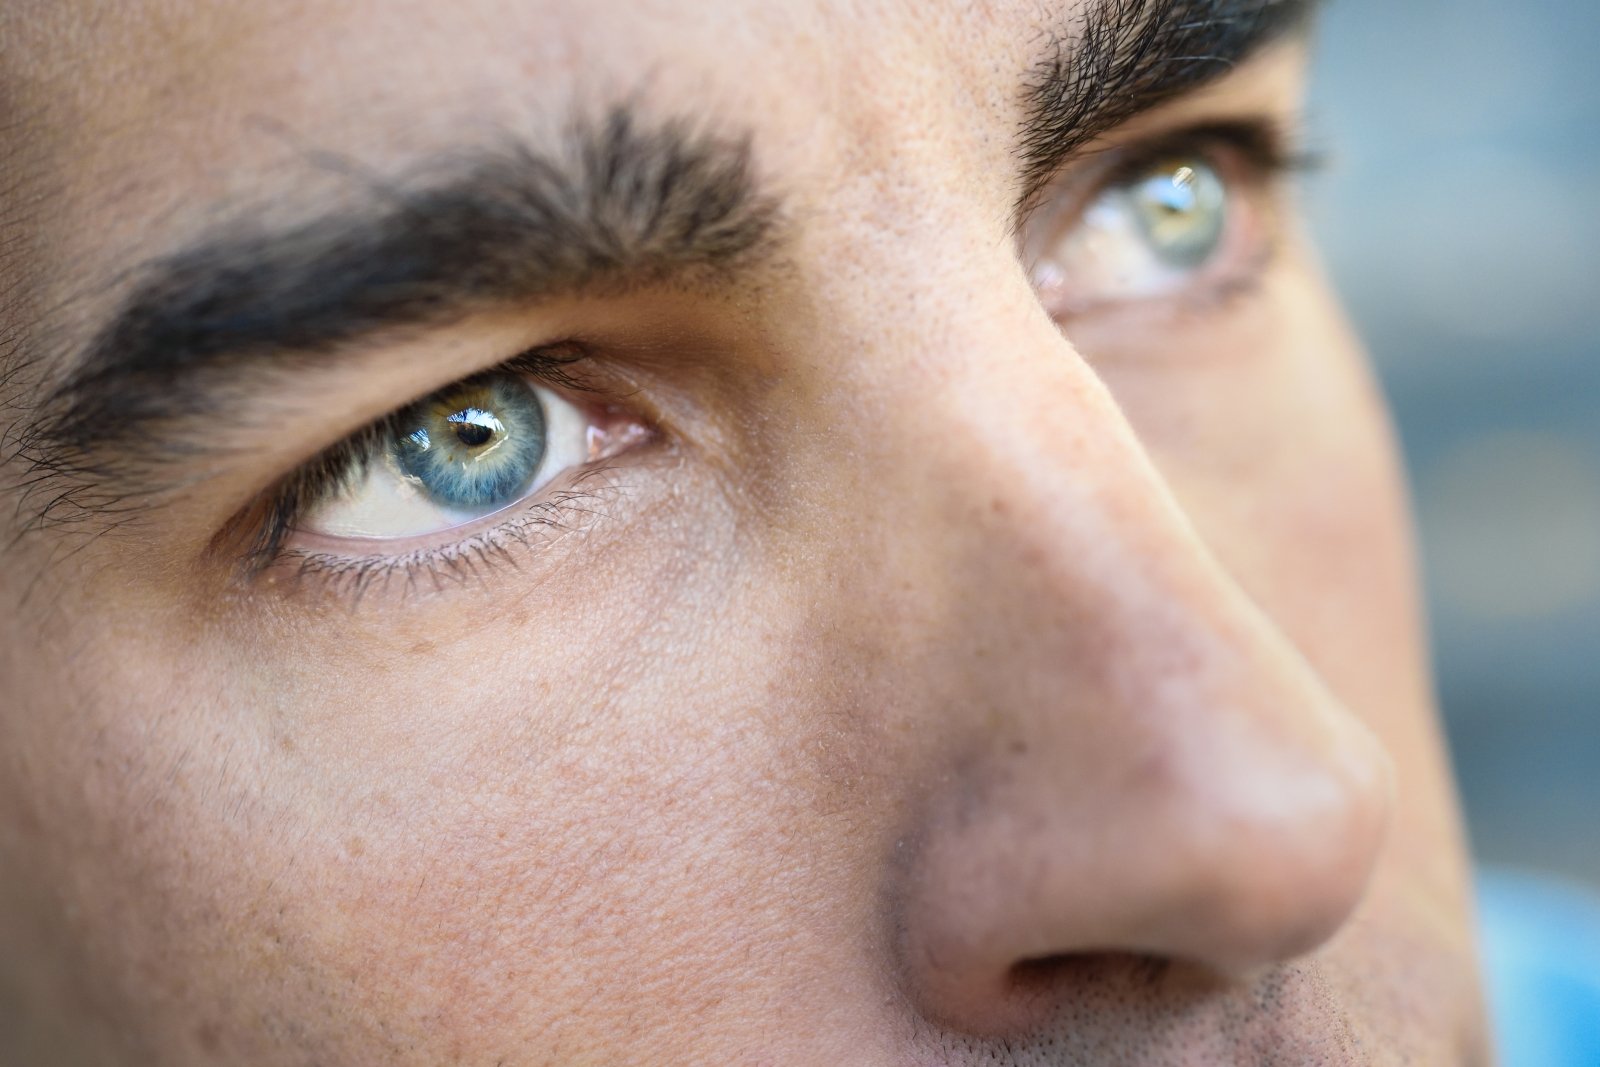 Akys gali įspėti apie artėjantį insultą